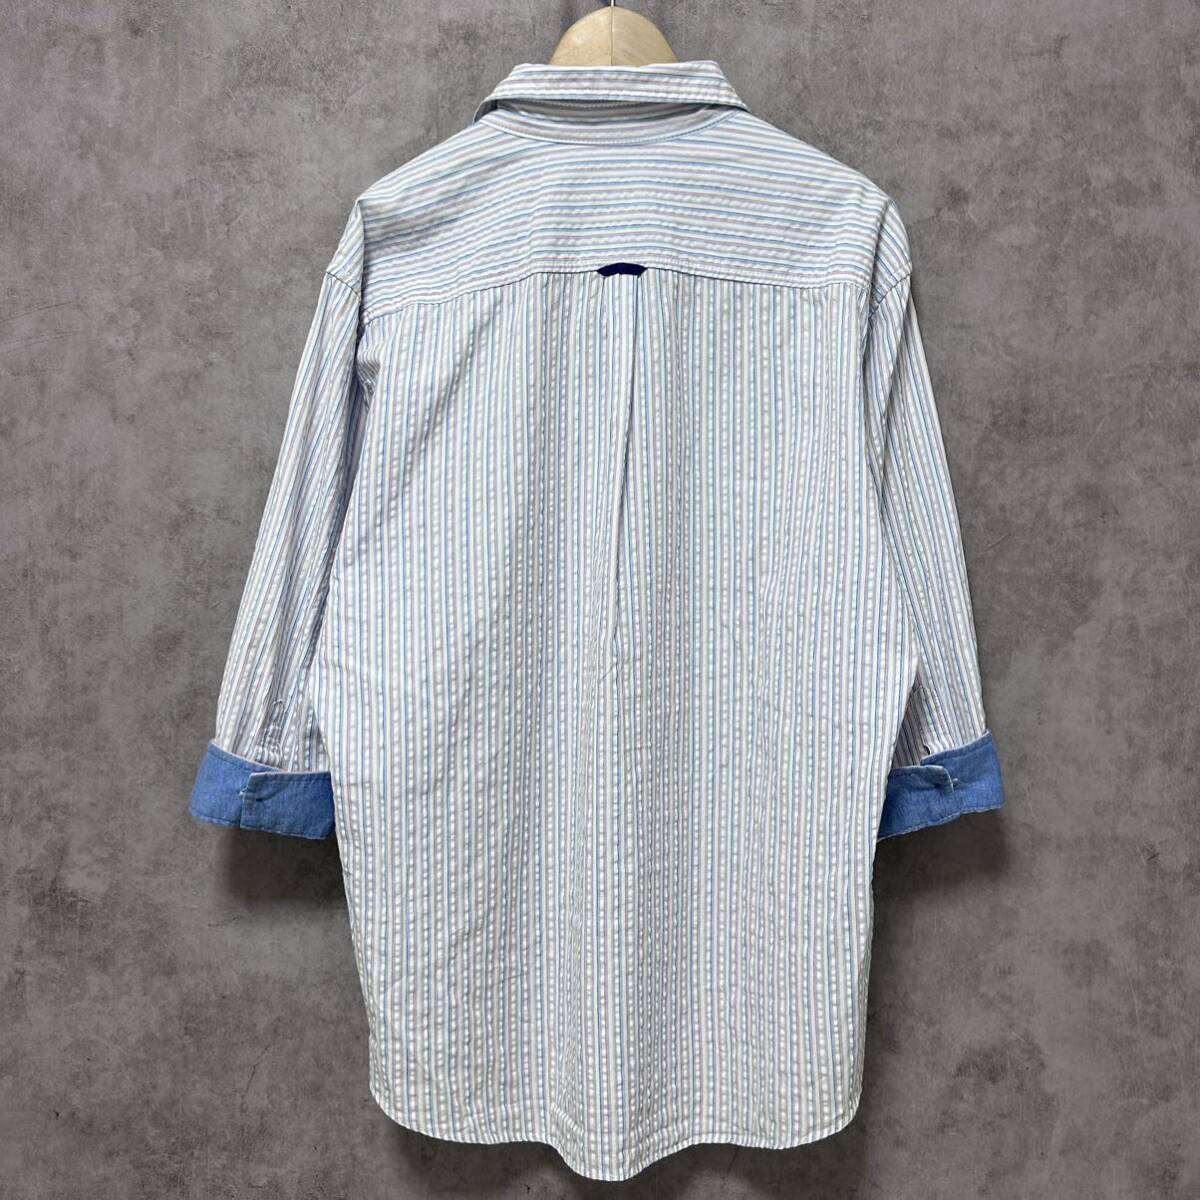  не использовался класс /L размер * Burberry Black Label шланг вышивка футбол ткань Skipper рубашка длинный рукав переключатель "дышит" голубой BURBERRY BLACKLABEL